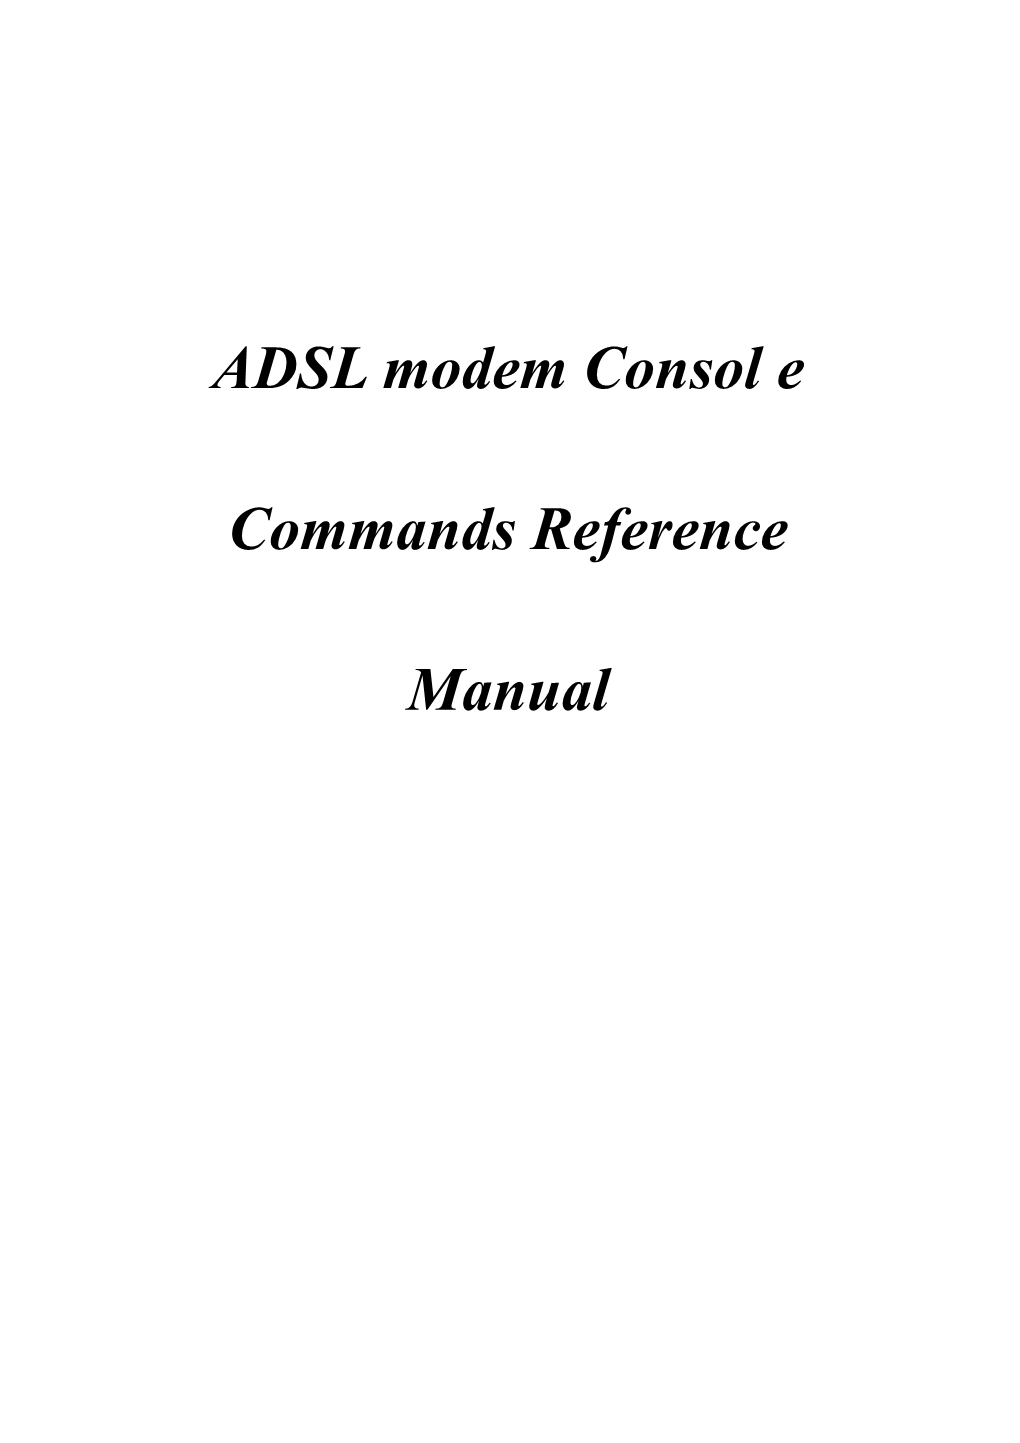 ADSL Modem Consol E